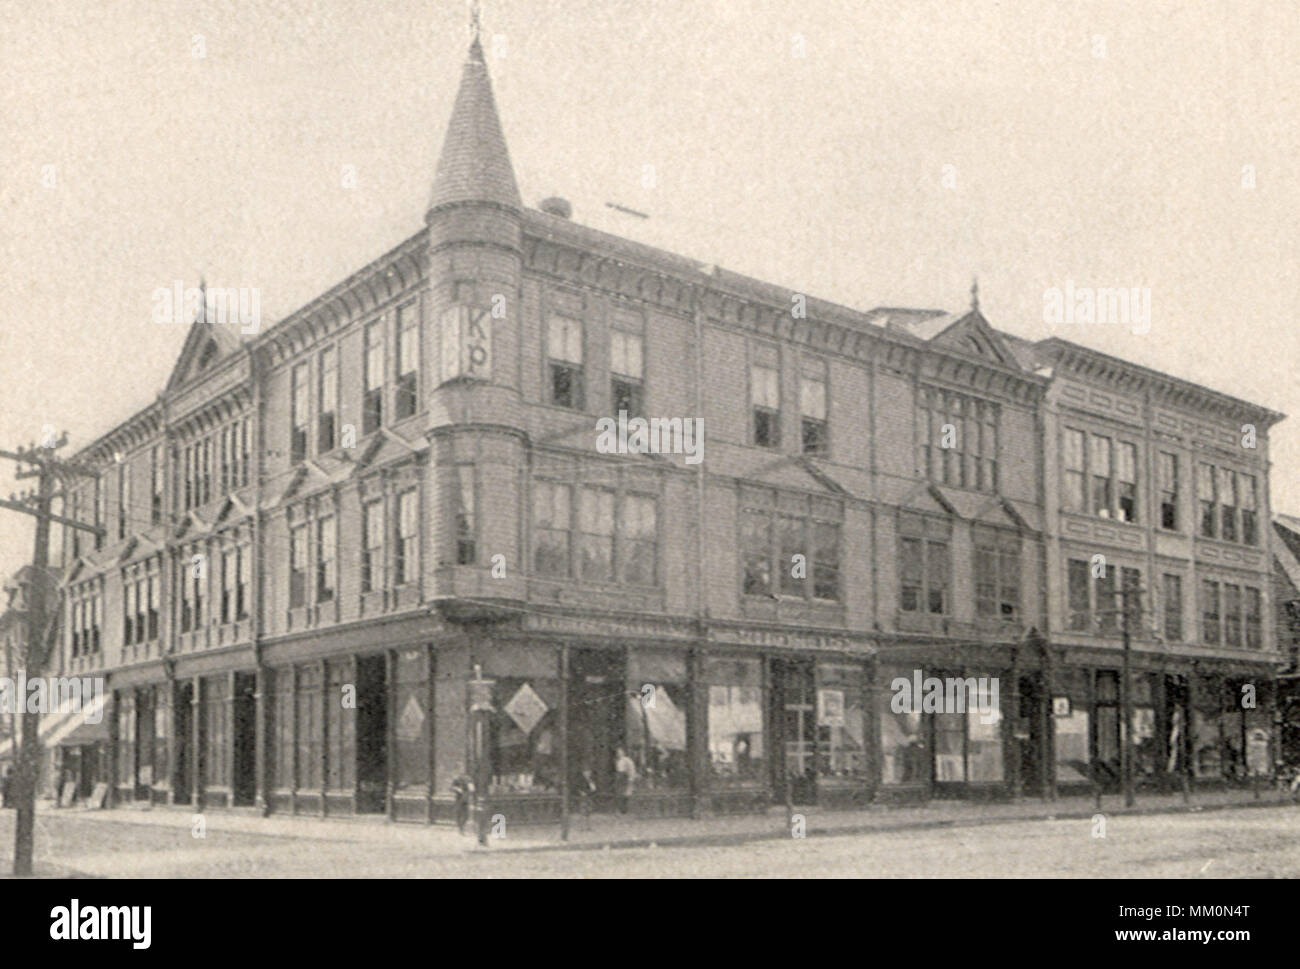 Bloque de Horton. Attleboro. 1920 Foto de stock